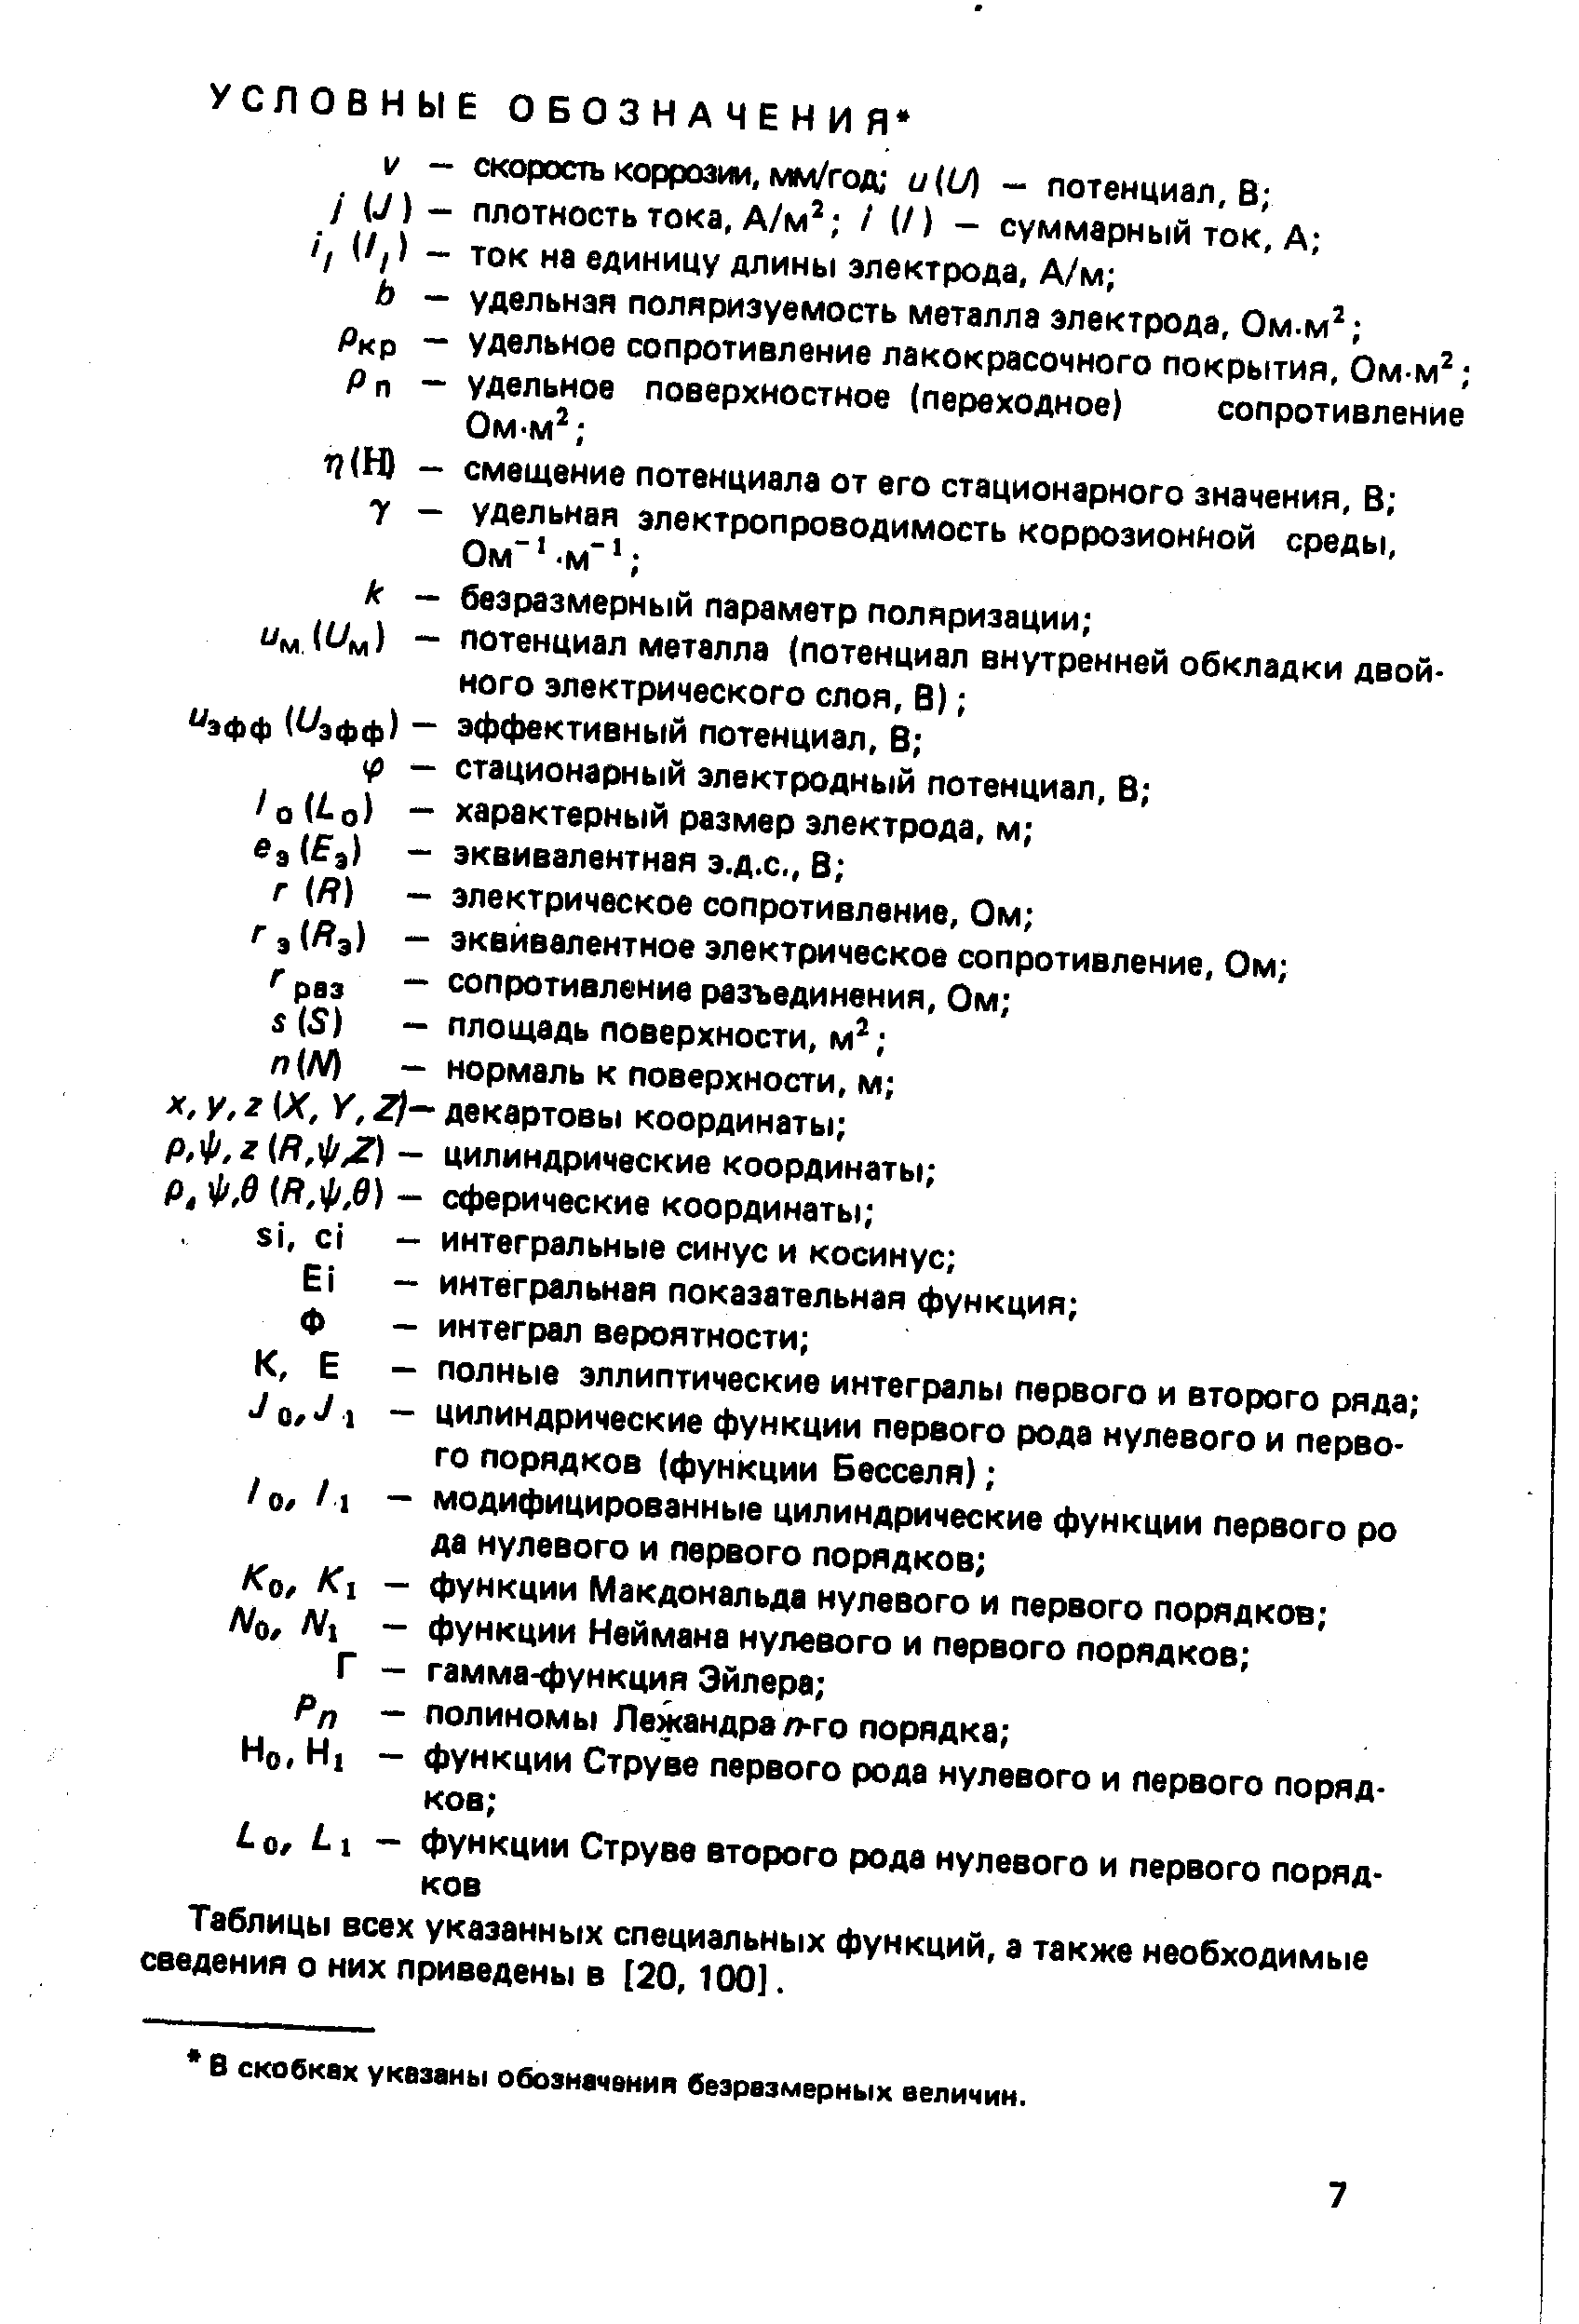 Таблицы всех указанных специальных функций, а также необходимые сведения о них приведены в [20,100].